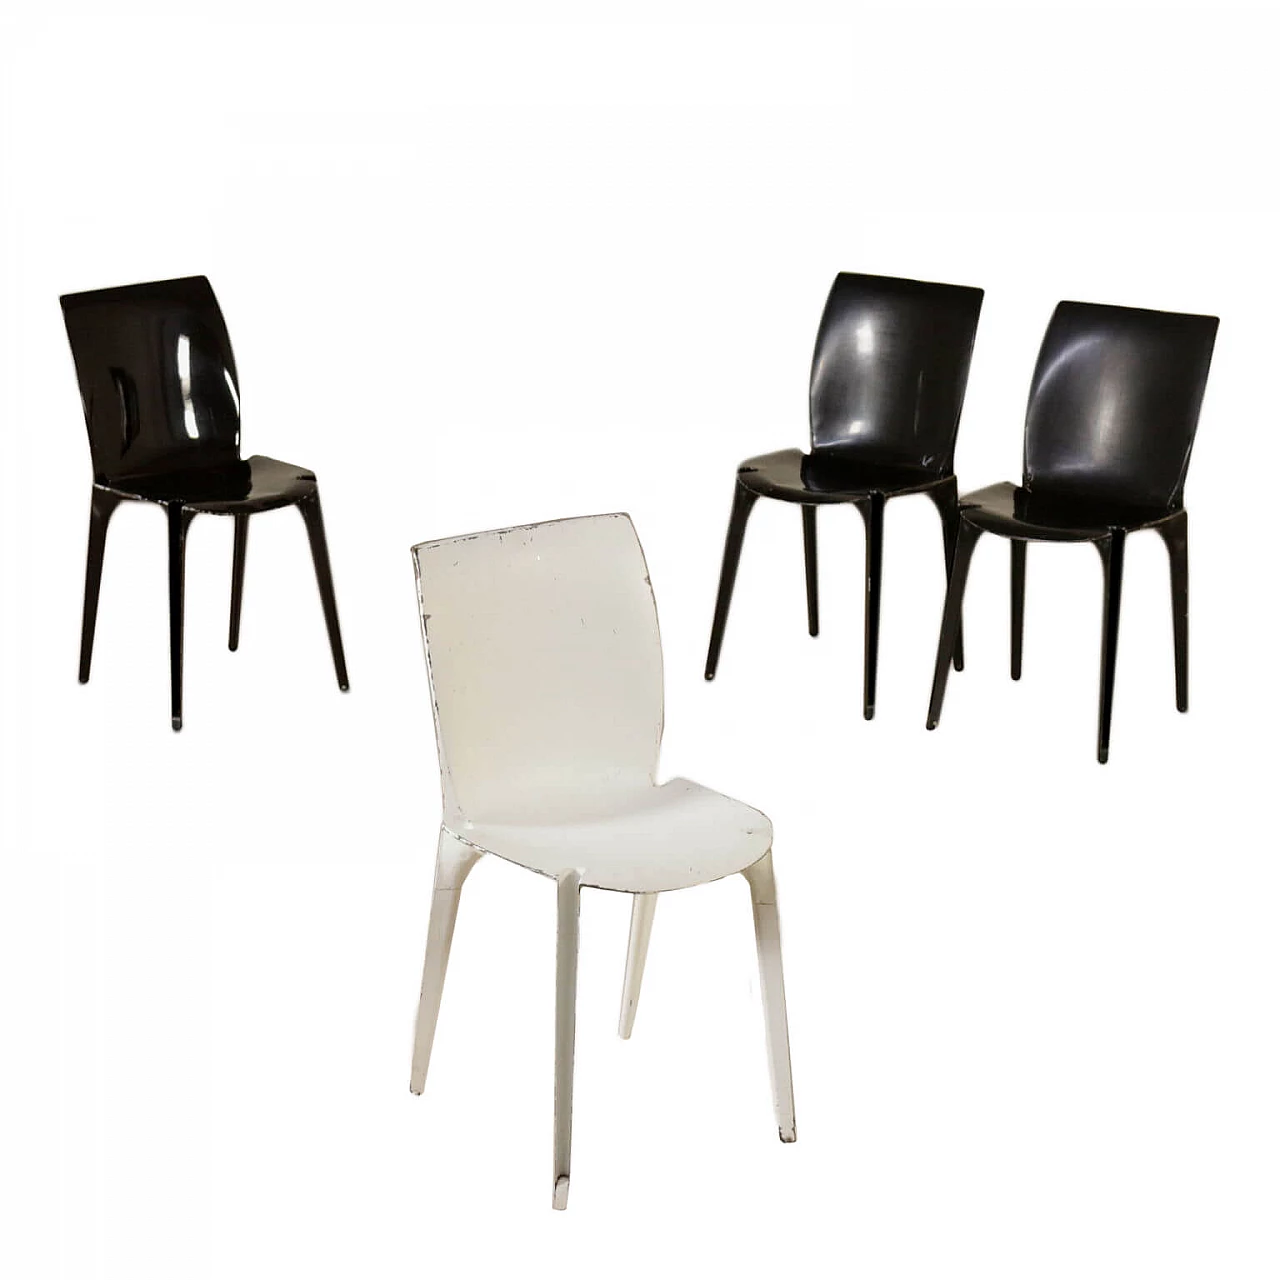 Four Lambda Chairs, by Marco Zanuso for Gavina, 1960s 1070886